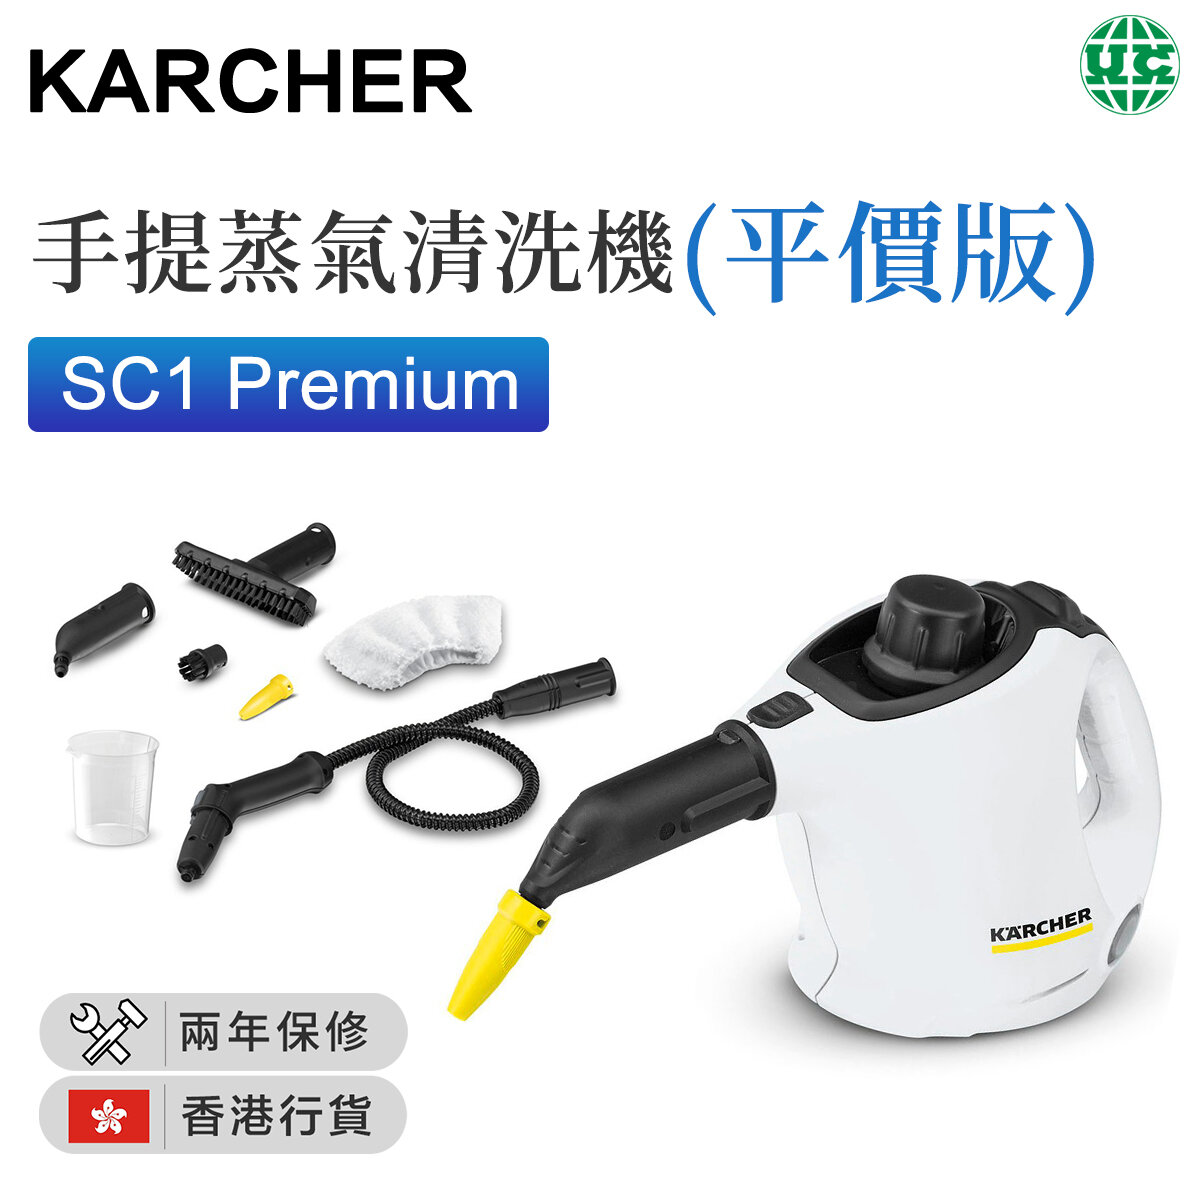 SC1 Premium 手提蒸氣清洗機 - 平價版【香港行貨】